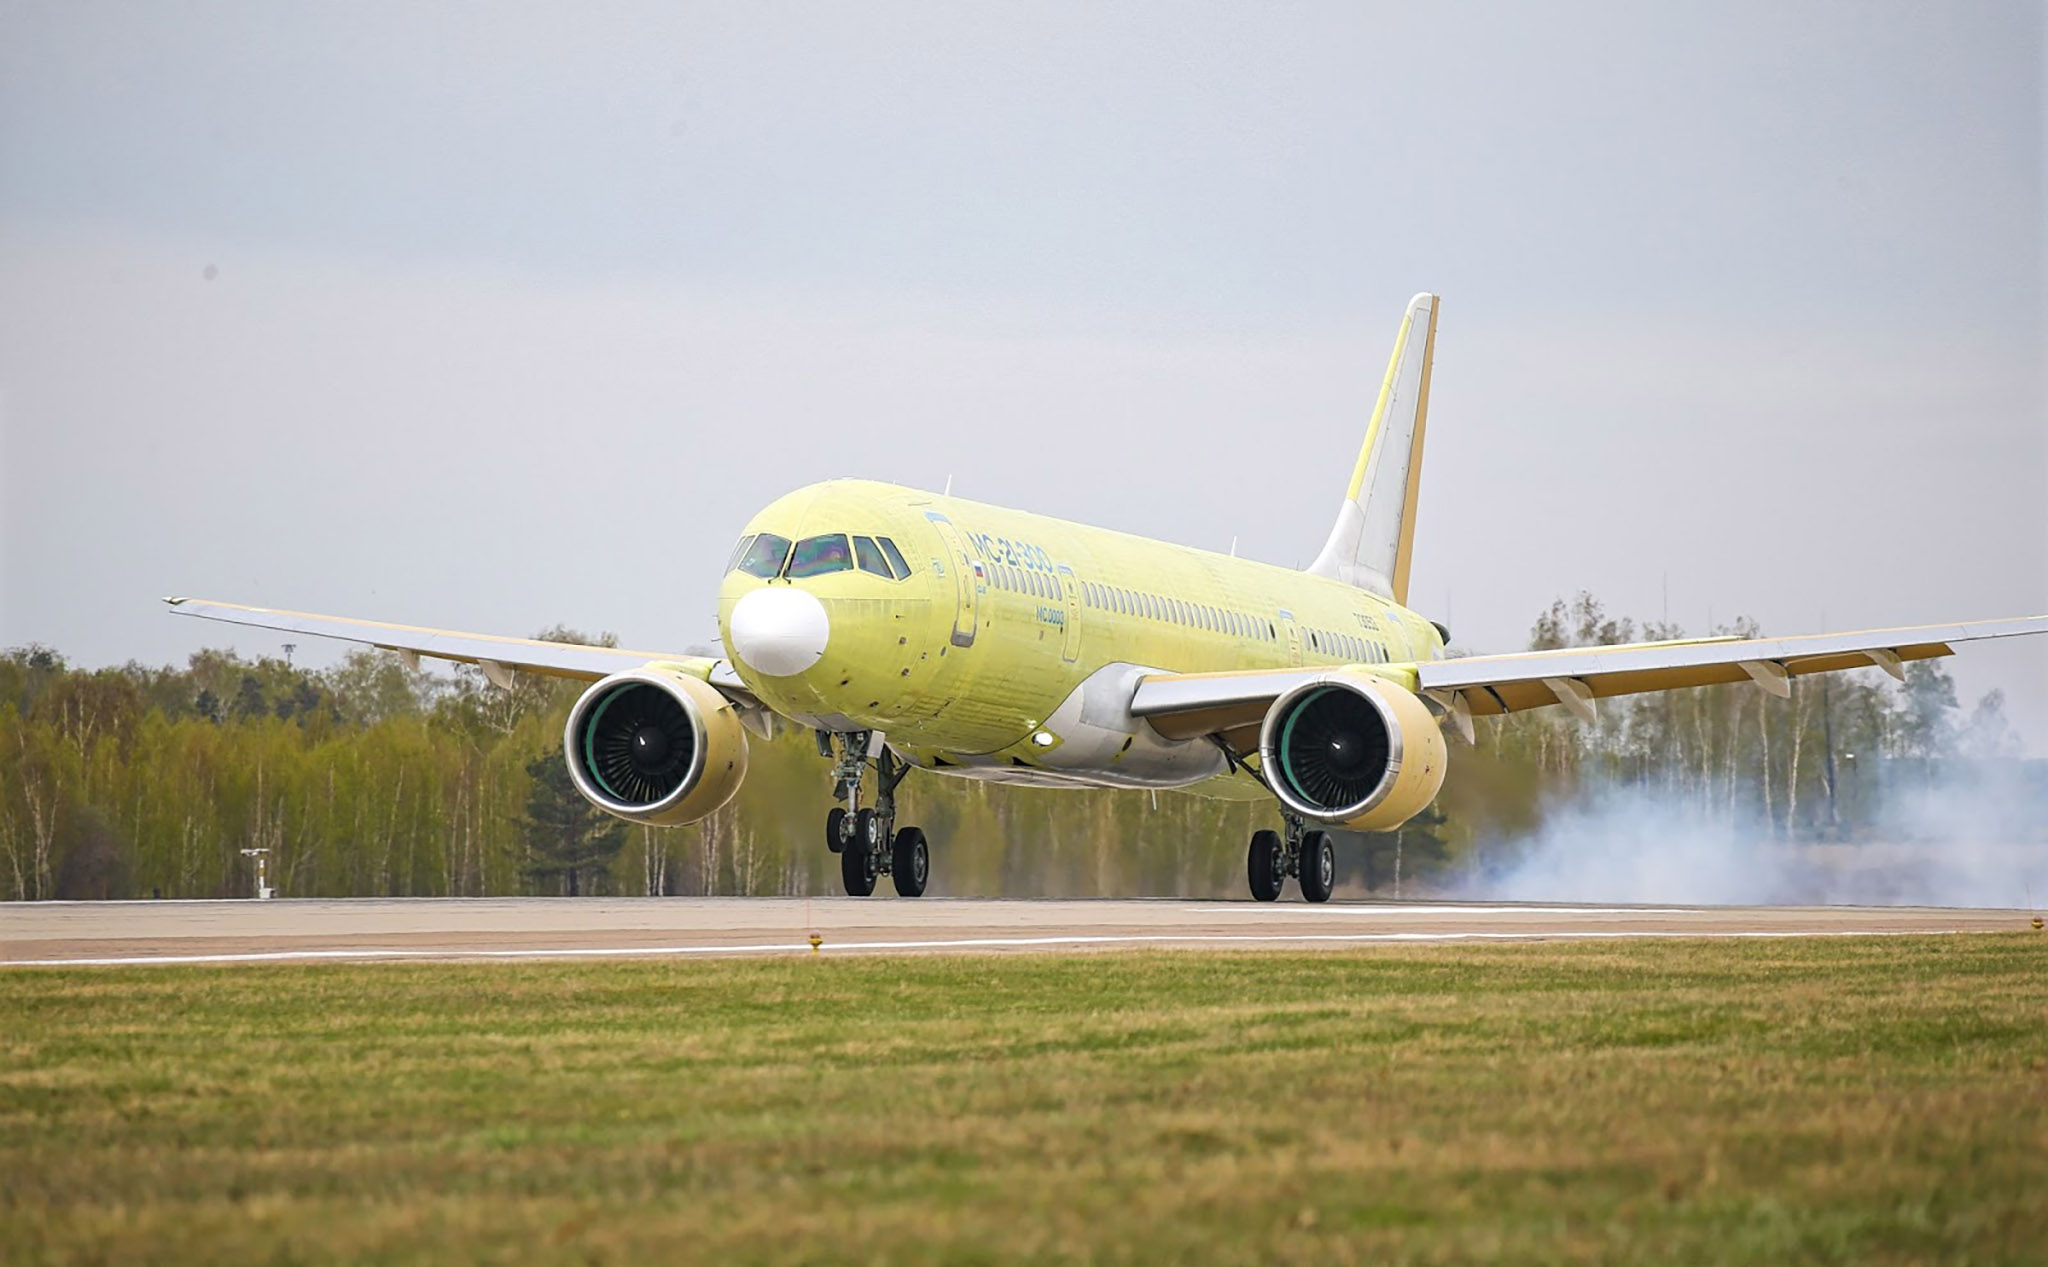 Irkut MC-21 - câu trả lời của Nga đối với A320neo và 737 MAX, tiếp tục bay thử nghiệm thành công